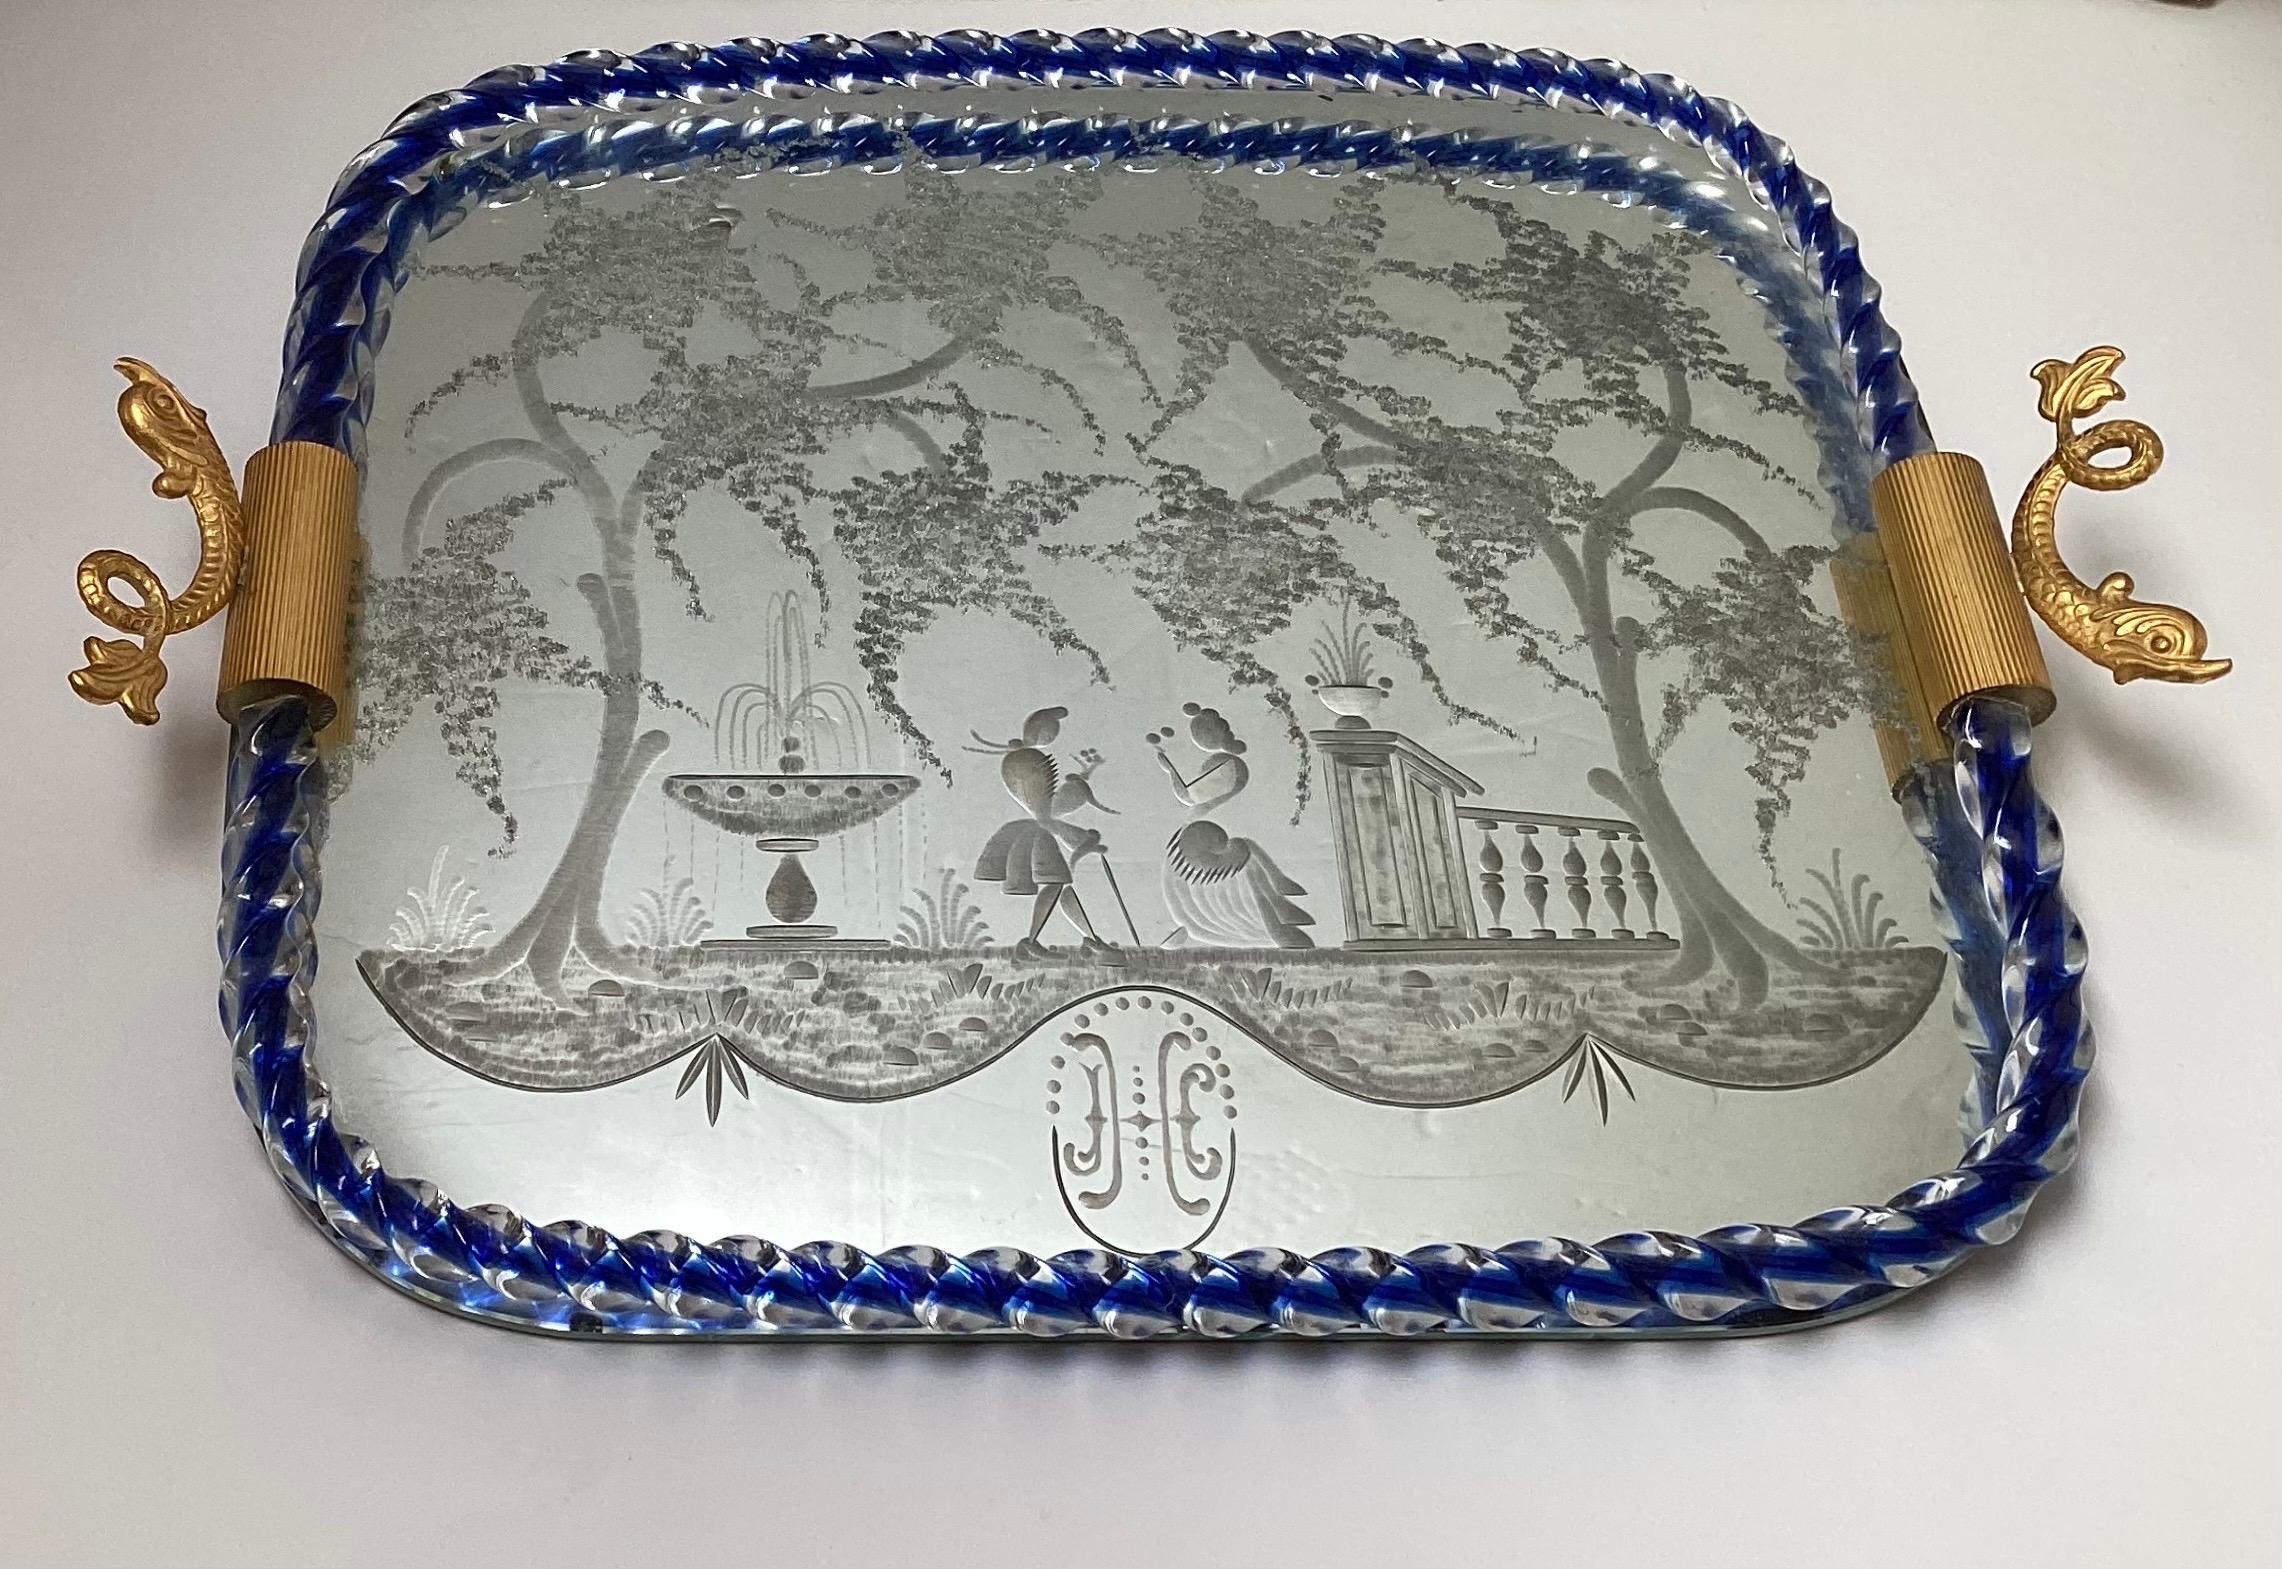 Elegantes Tablett aus verspiegeltem Murano-Glas mit kobaltfarbenem, gedrehtem Glas und Galeriekante.  Das geätzte Design zeigt eine venezianische Szene mit einem umwerbenden Paar.  Die goldfarbenen Metallgriffe mit Delphinmotiv, Ital, CIRCA 1950. 